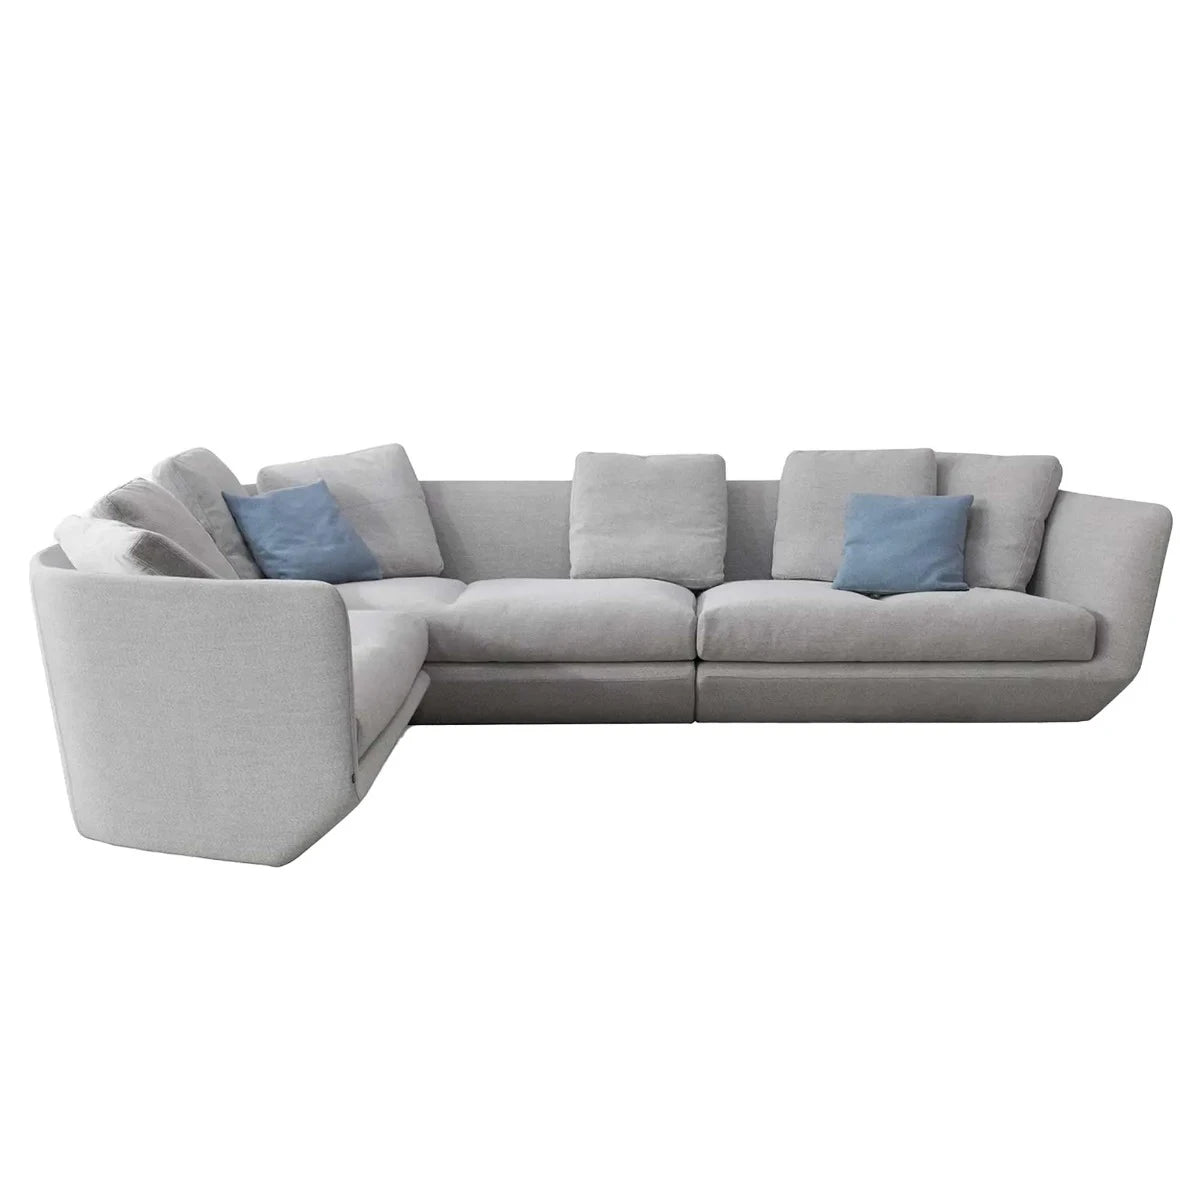 AURA sectional sofa